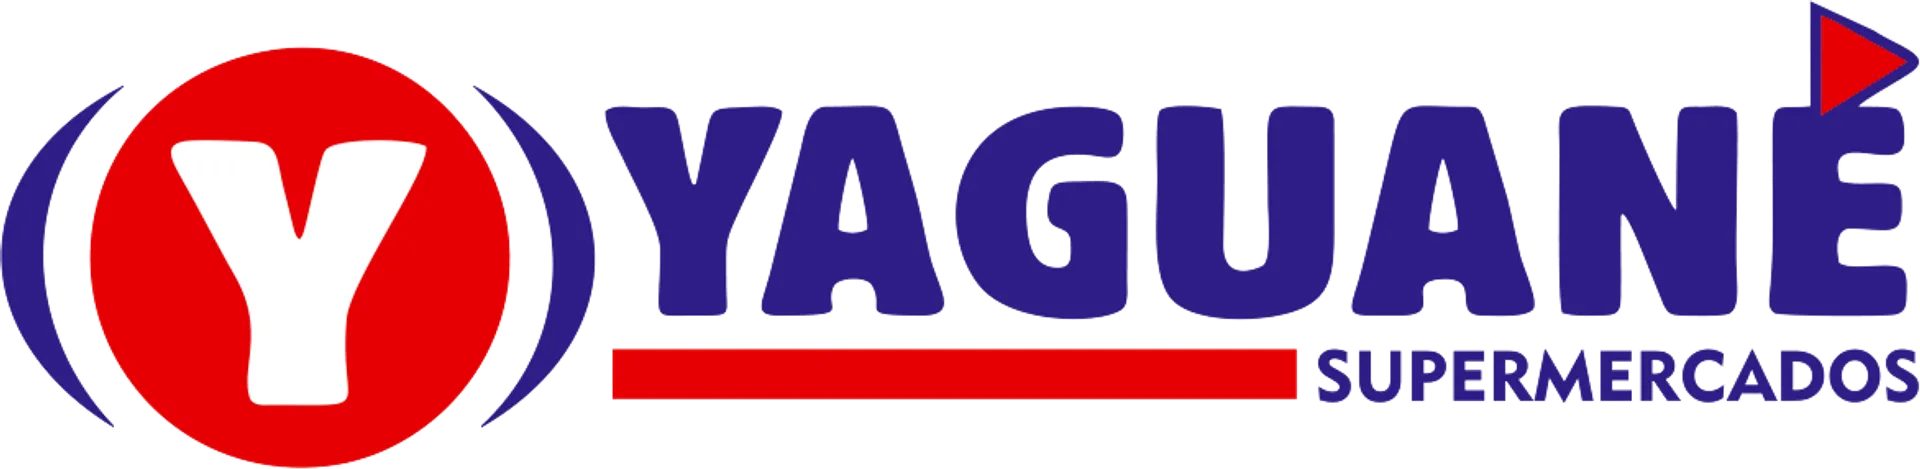 YAGUANÉ SUPERMERCADOS logo de catálogo